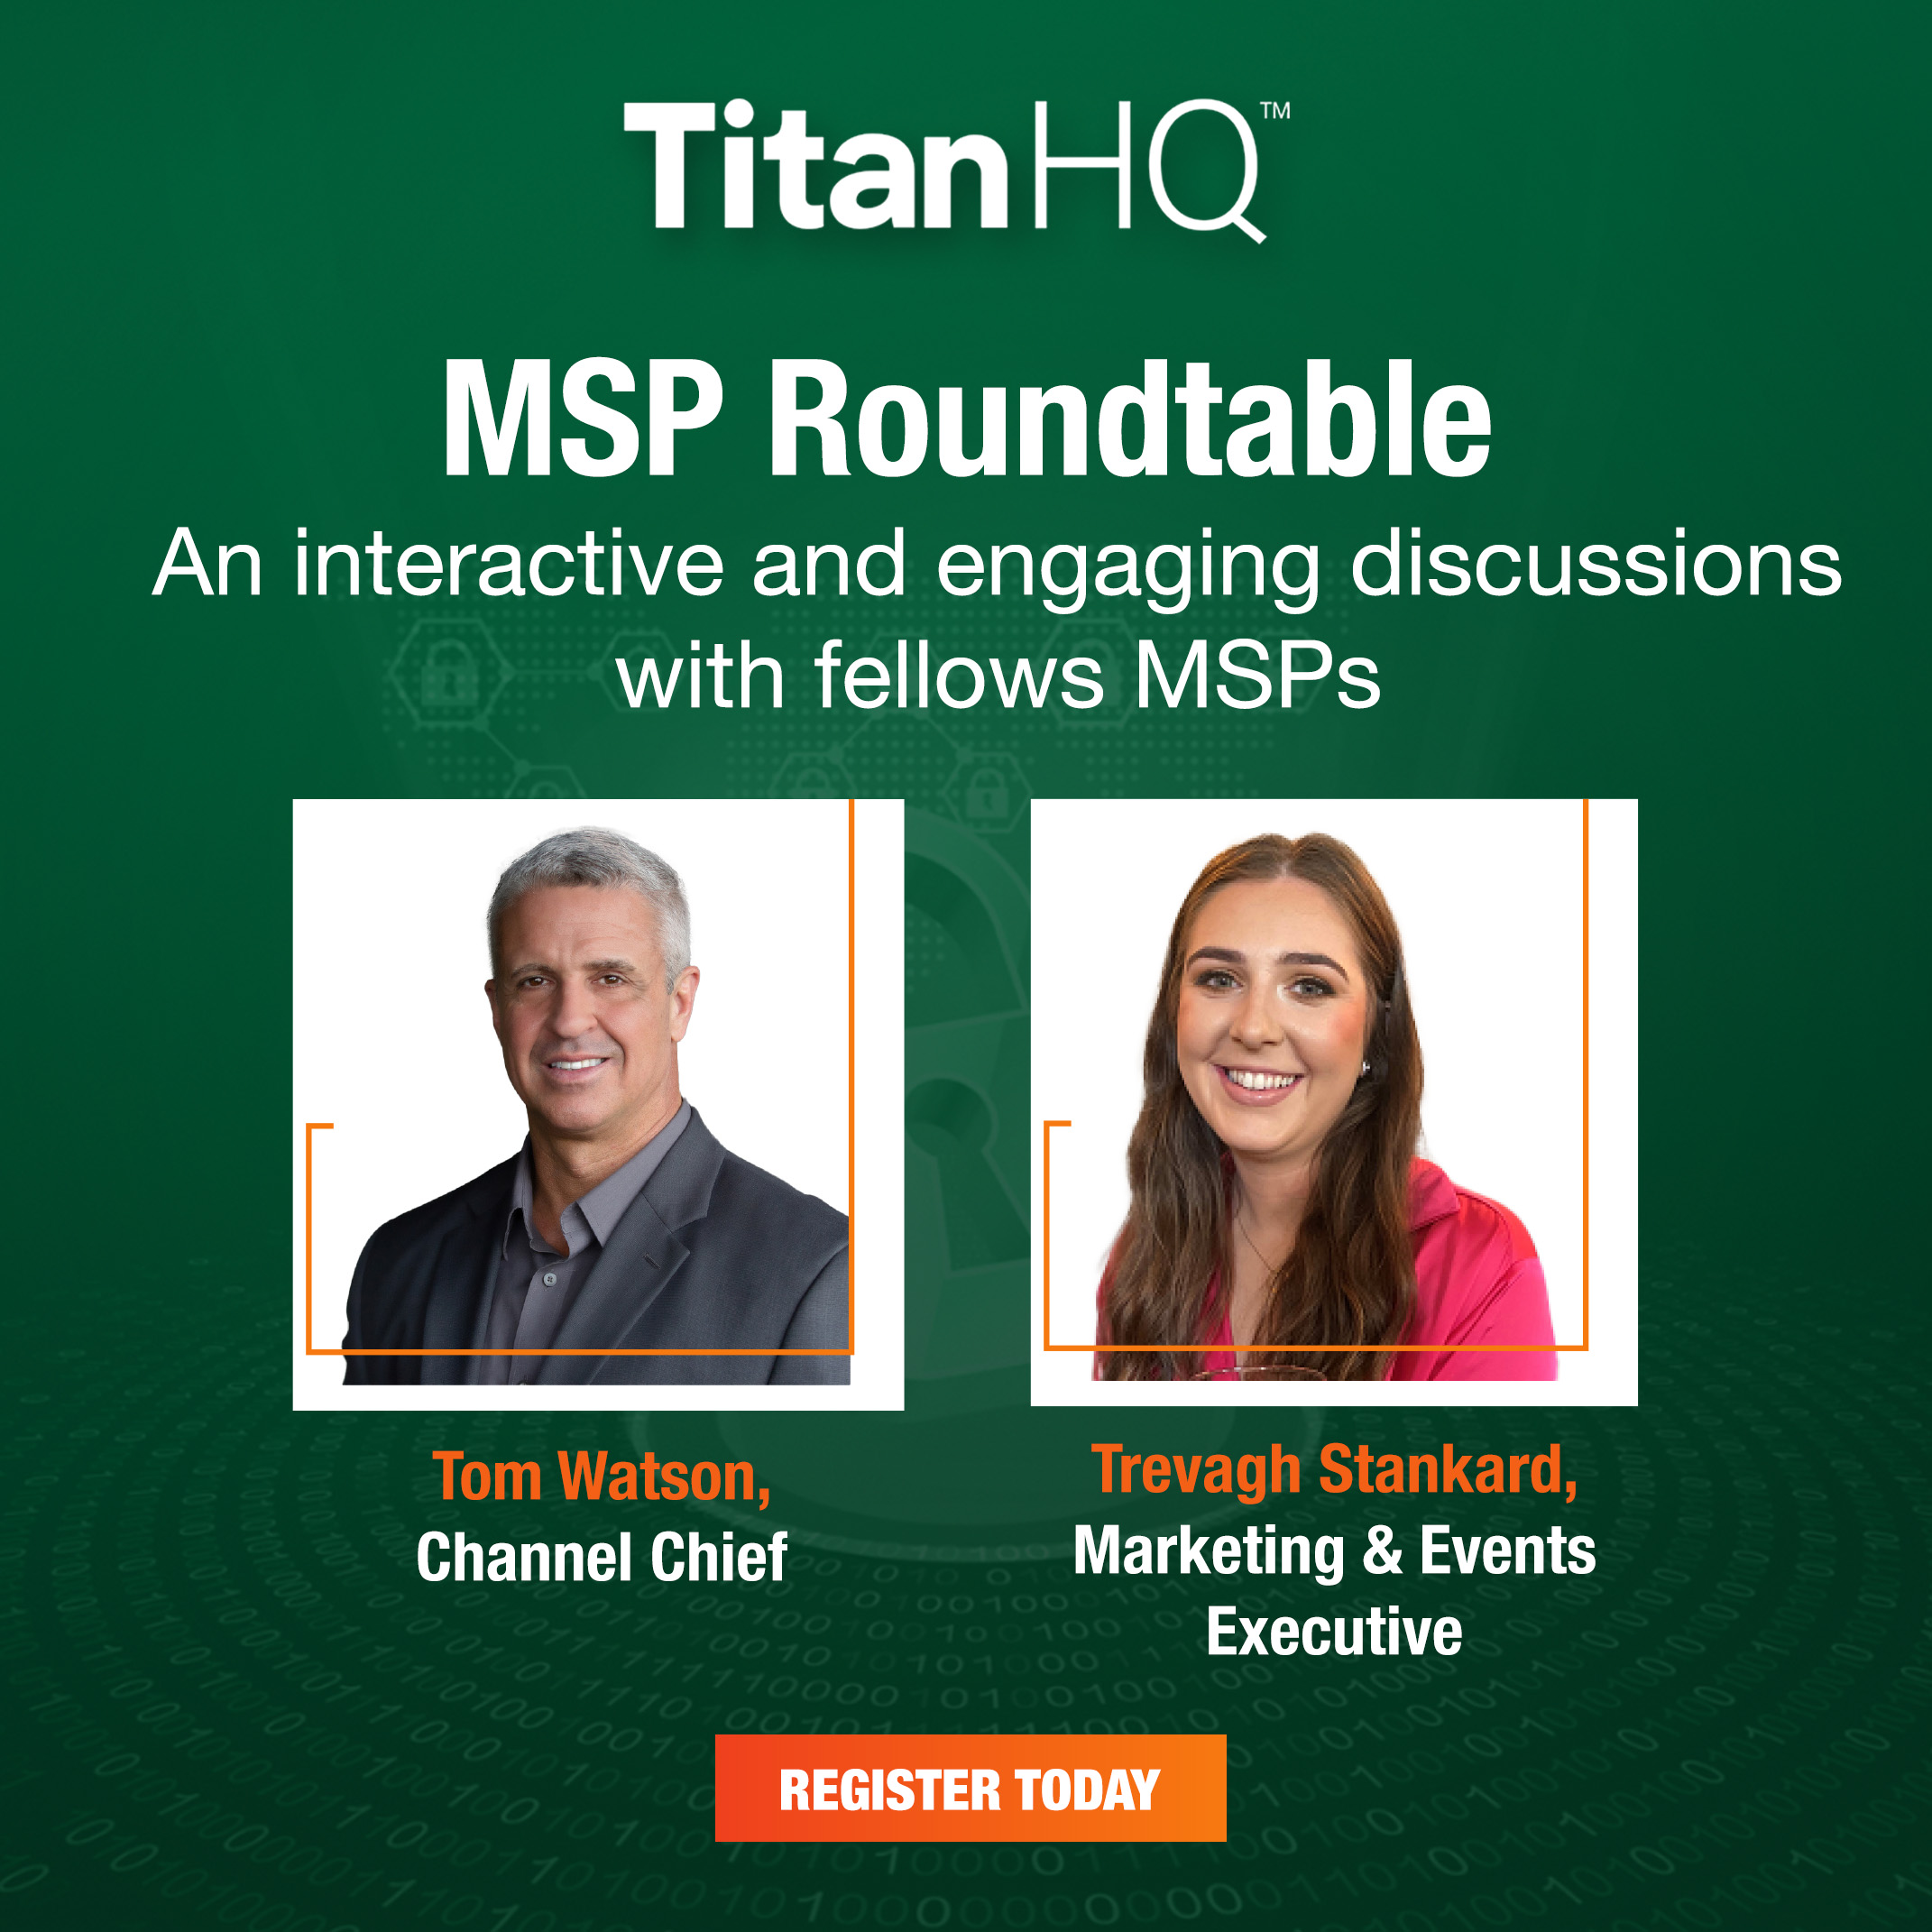 TitanHQ MSP Roundtable